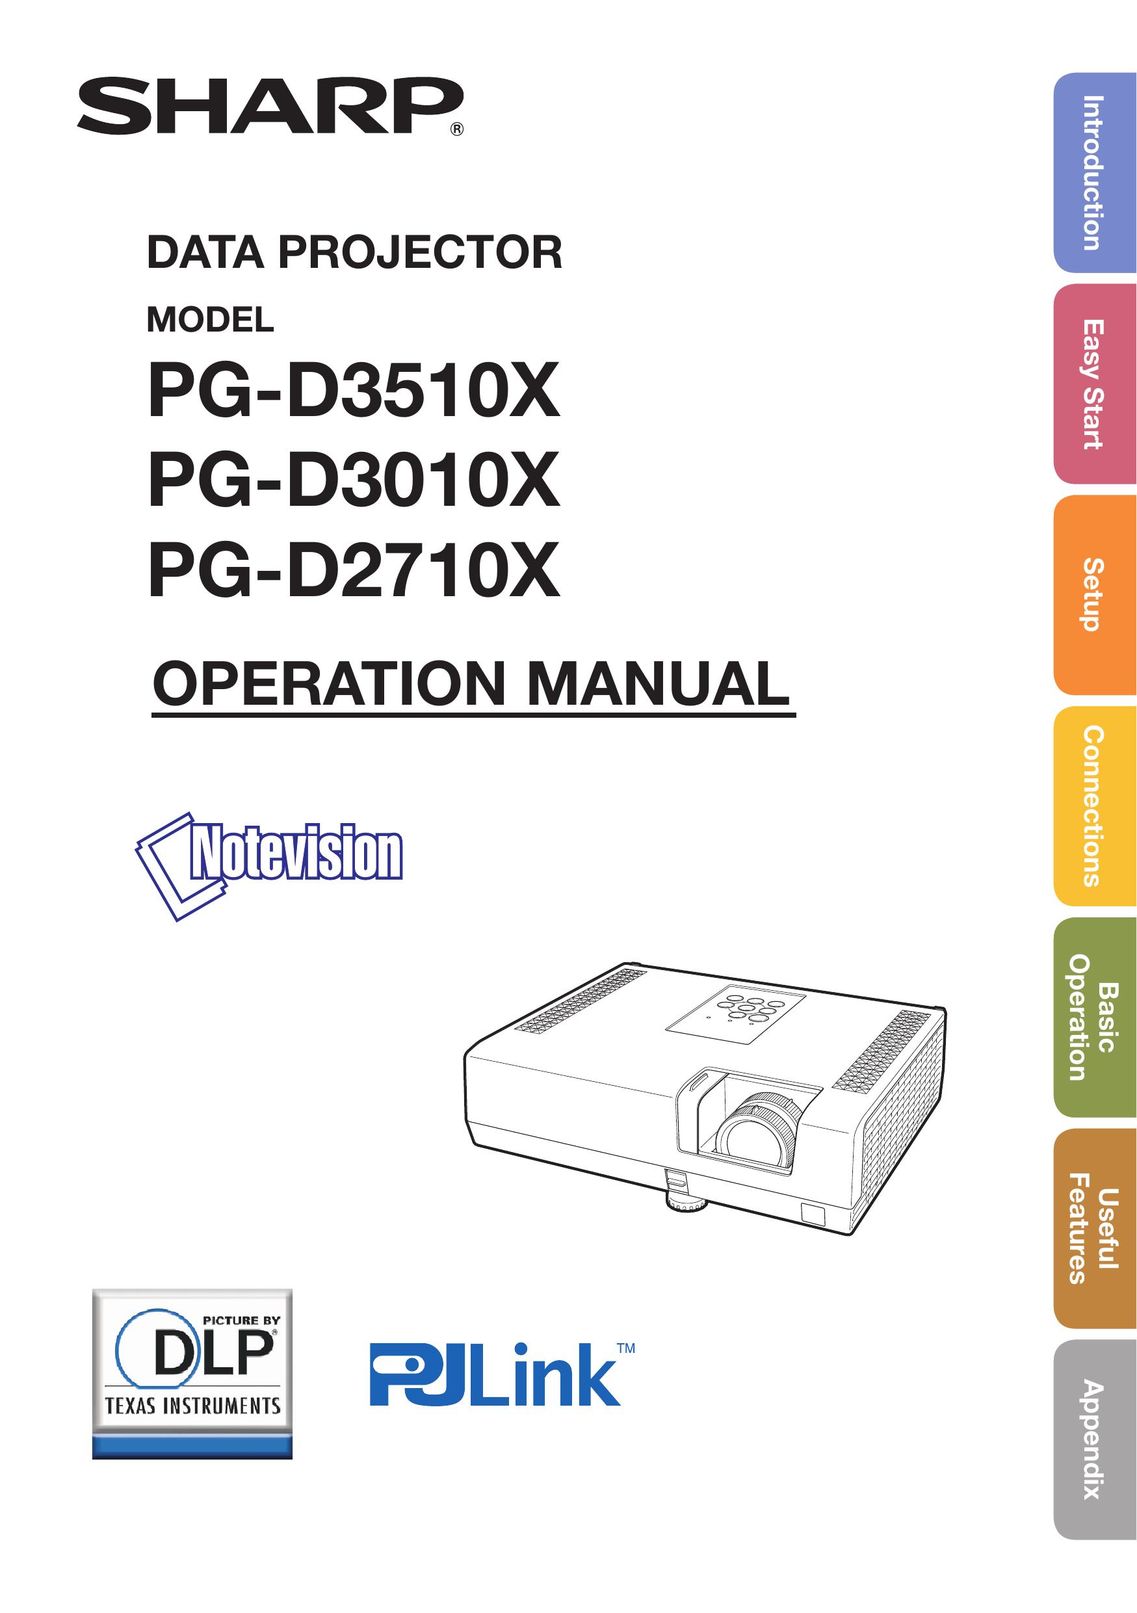 Sharp PG-D2710X Projector User Manual